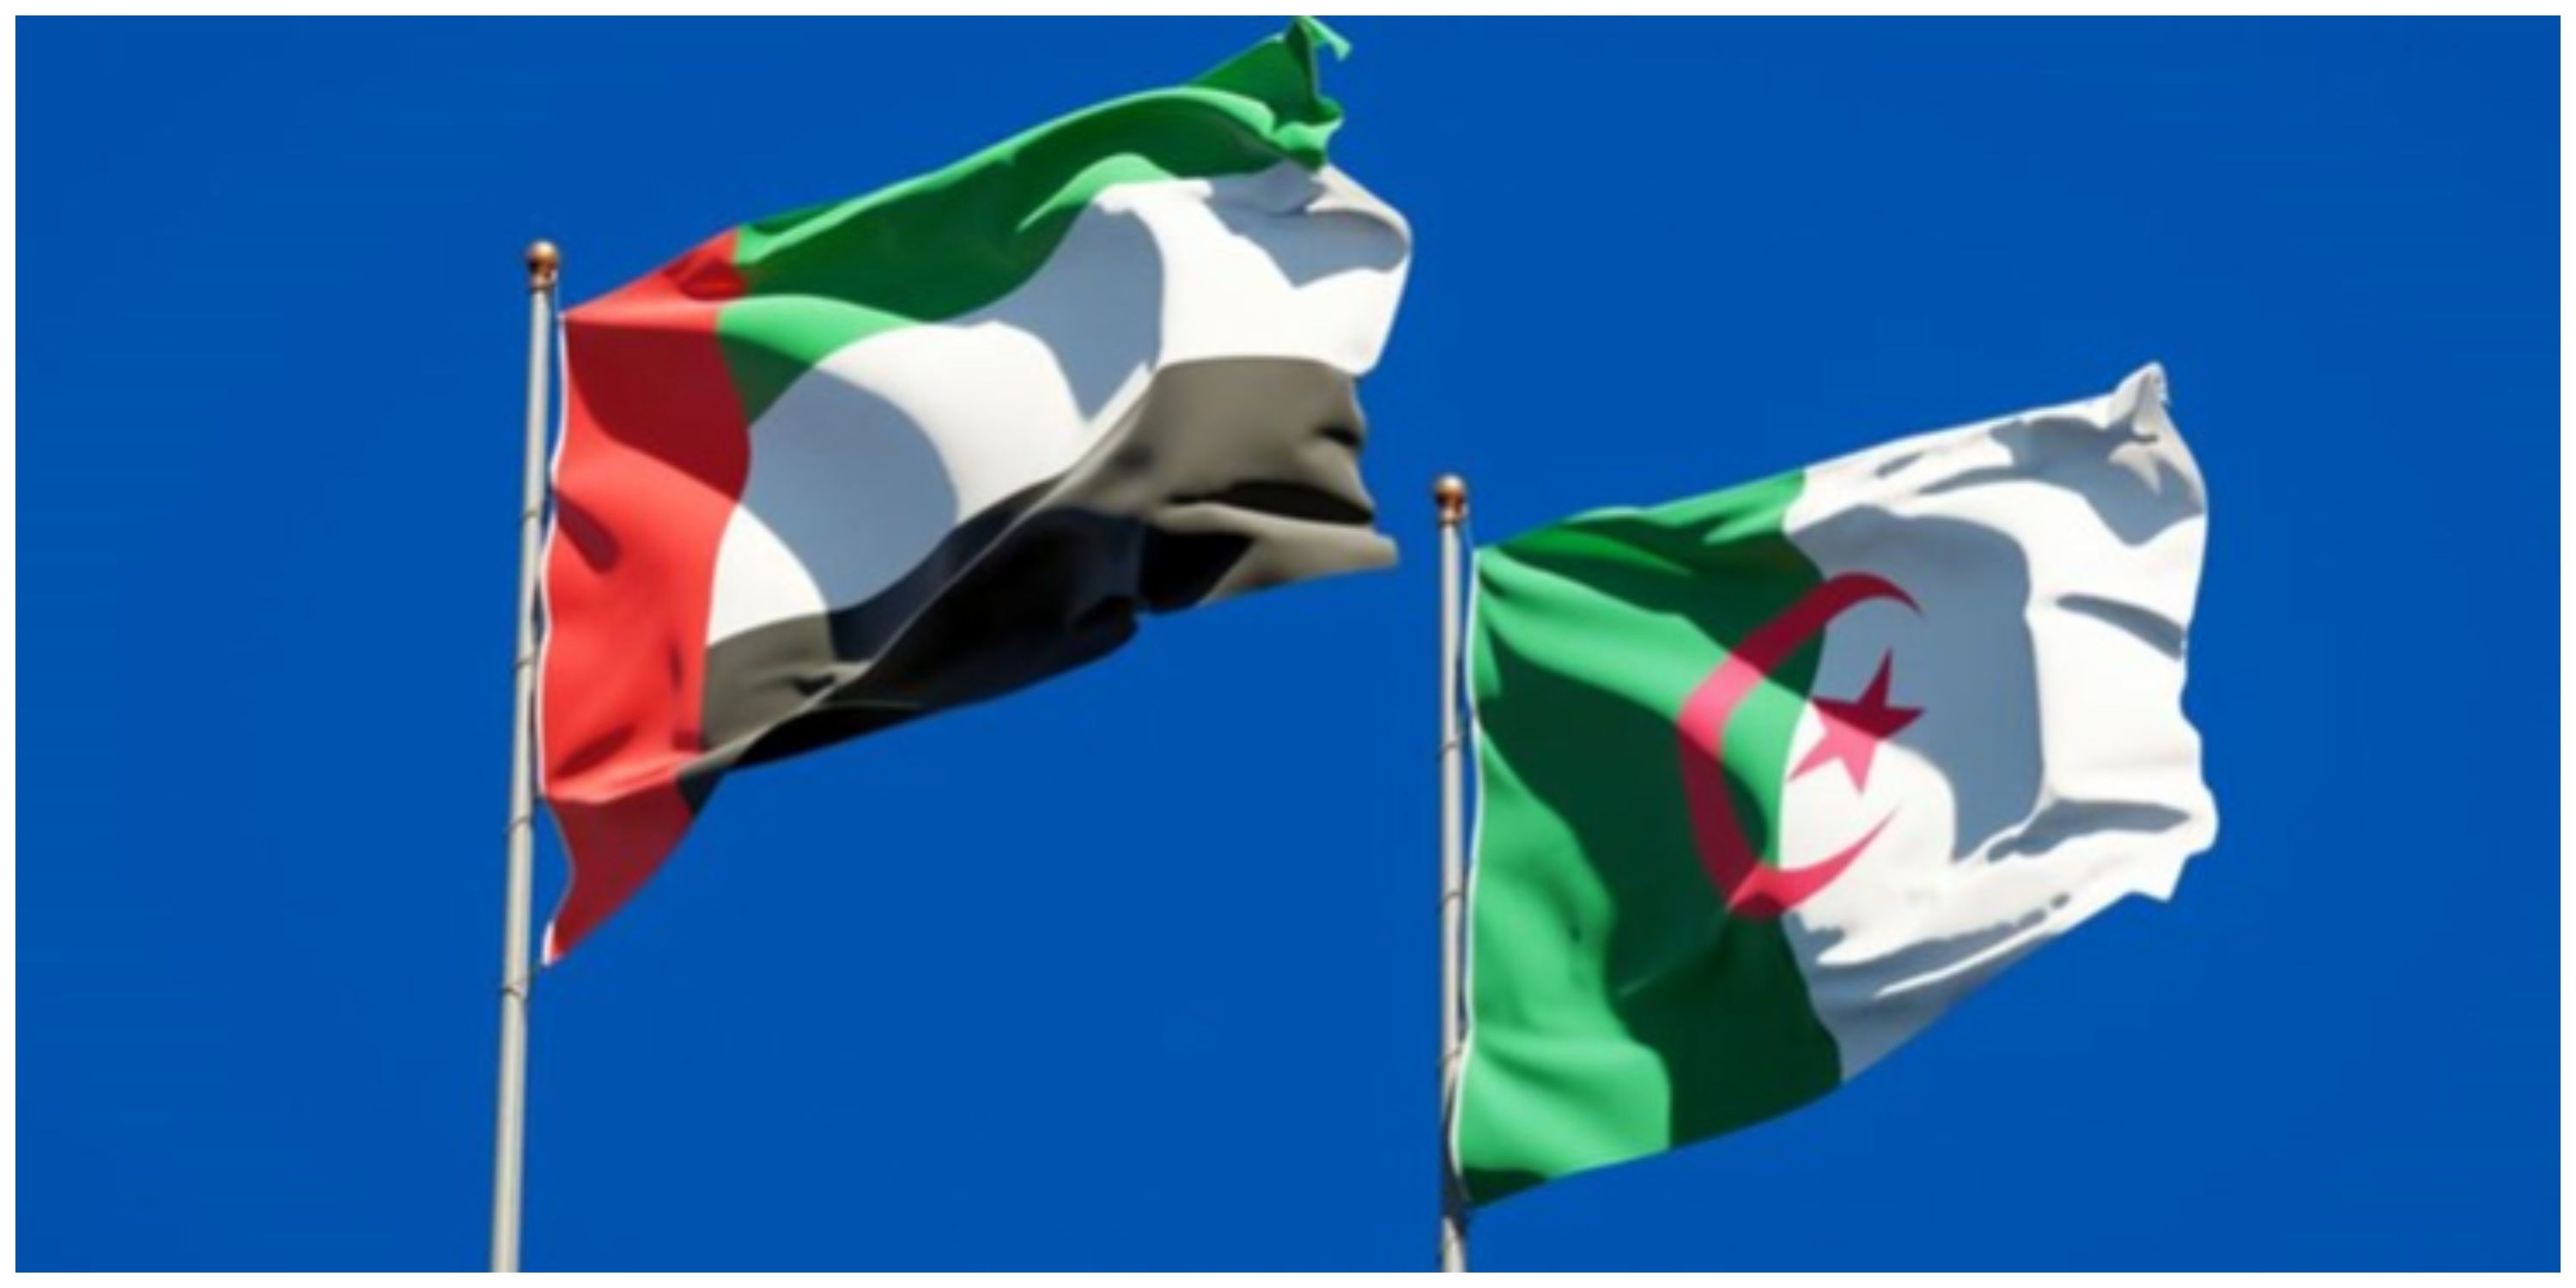  اخراج سفیر امارات در الجزایر صحت دارد؟